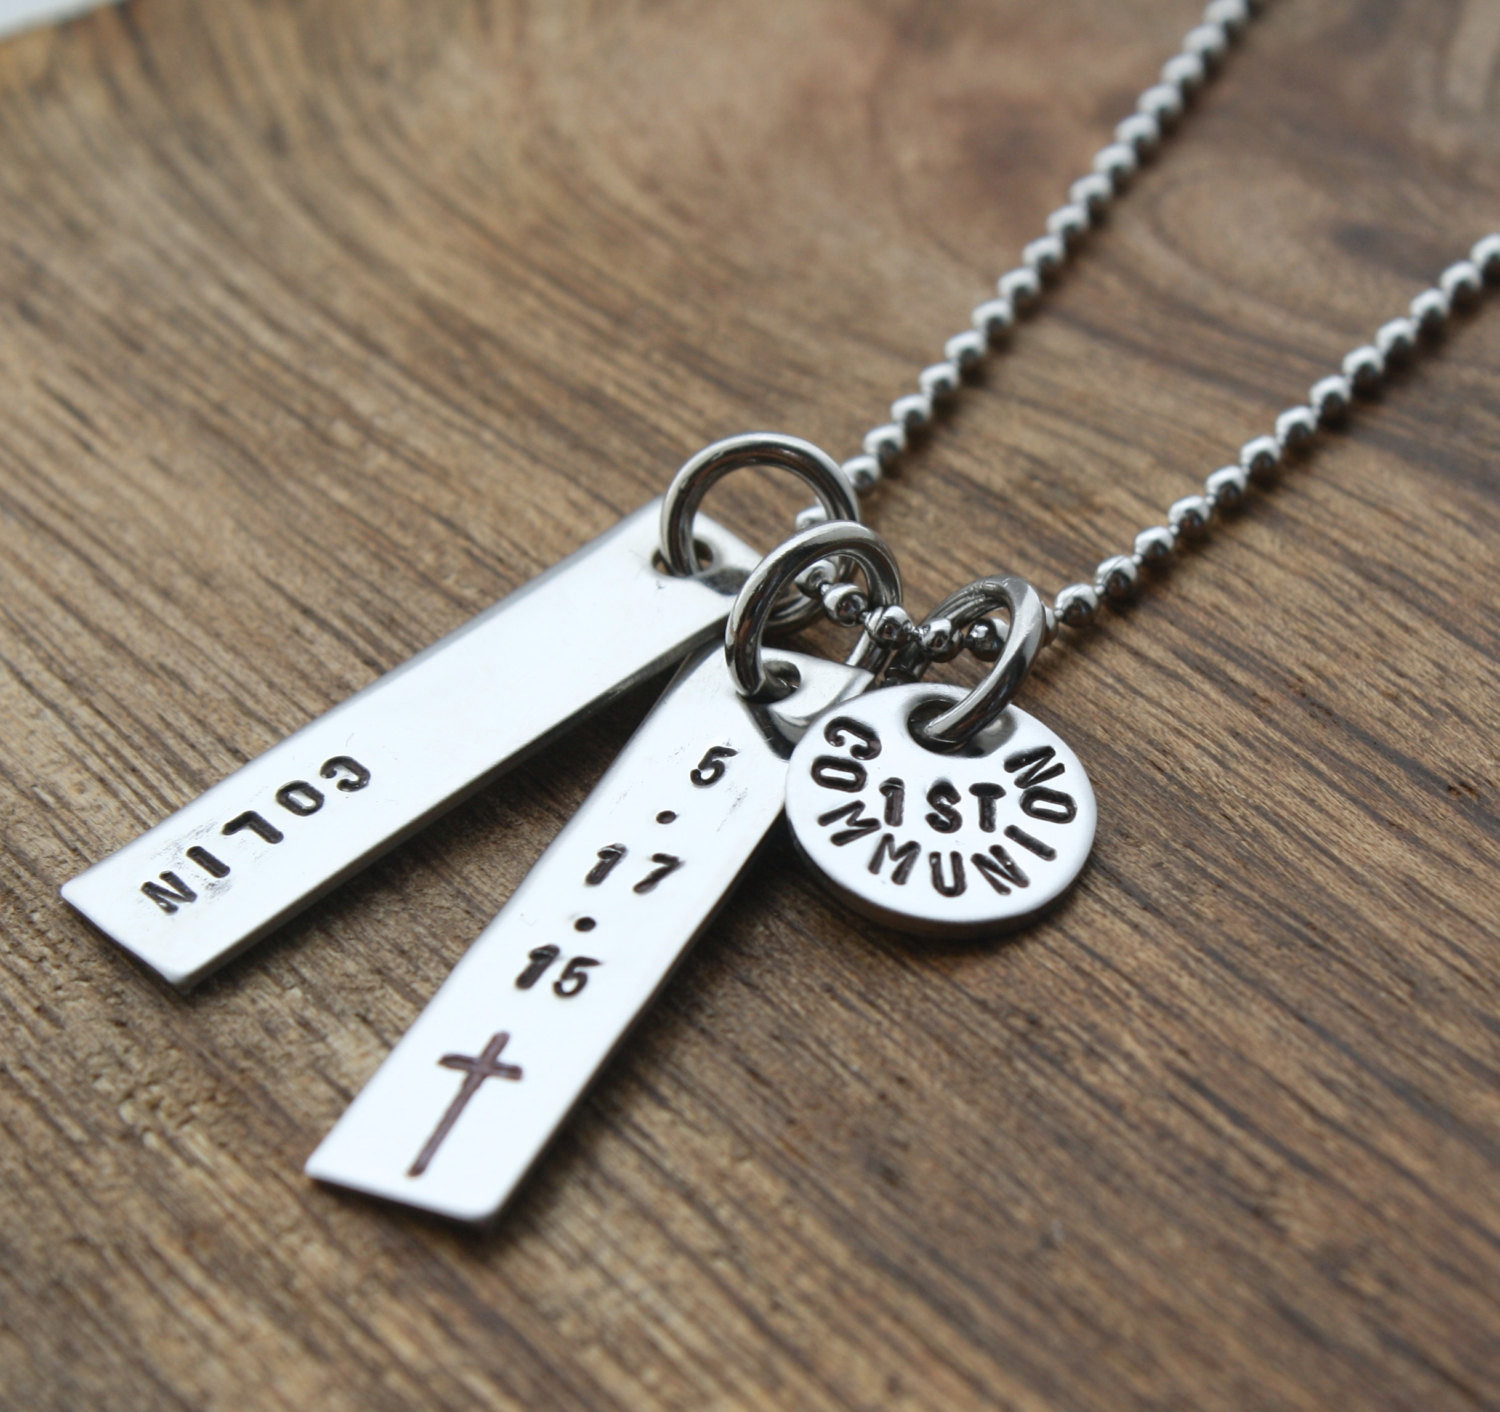 Boys Communion Gift Ideas
 Boys First munion Necklace For Boy by sierrametaldesign